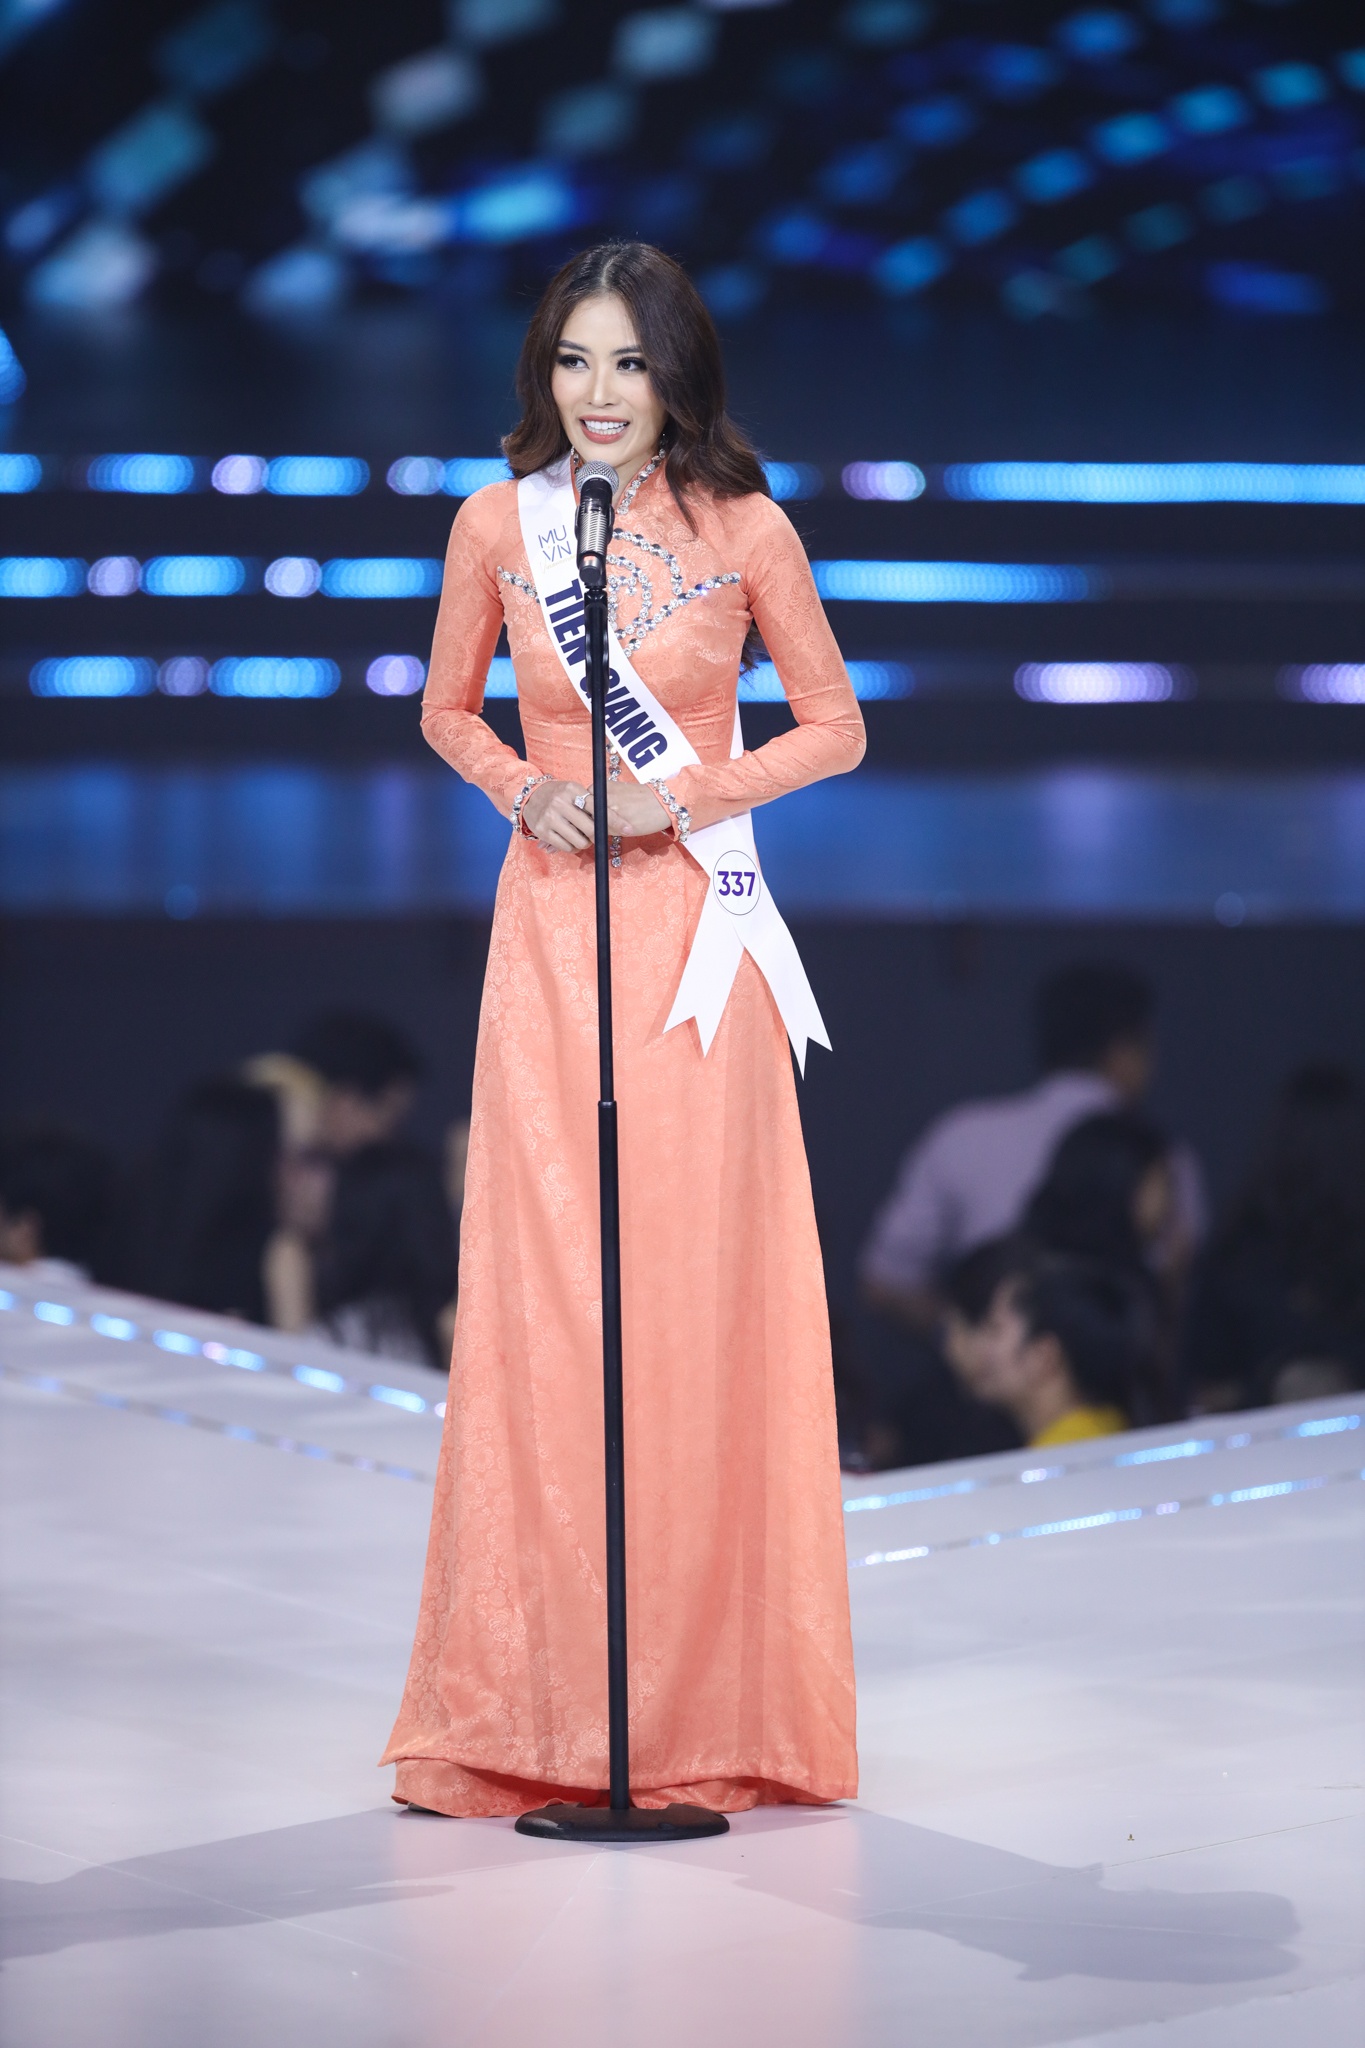 Nỗi ám ảnh thi tiếng Anh của thí sinh Hoa hậu Hoàn vũ Việt Nam - Ảnh 3.